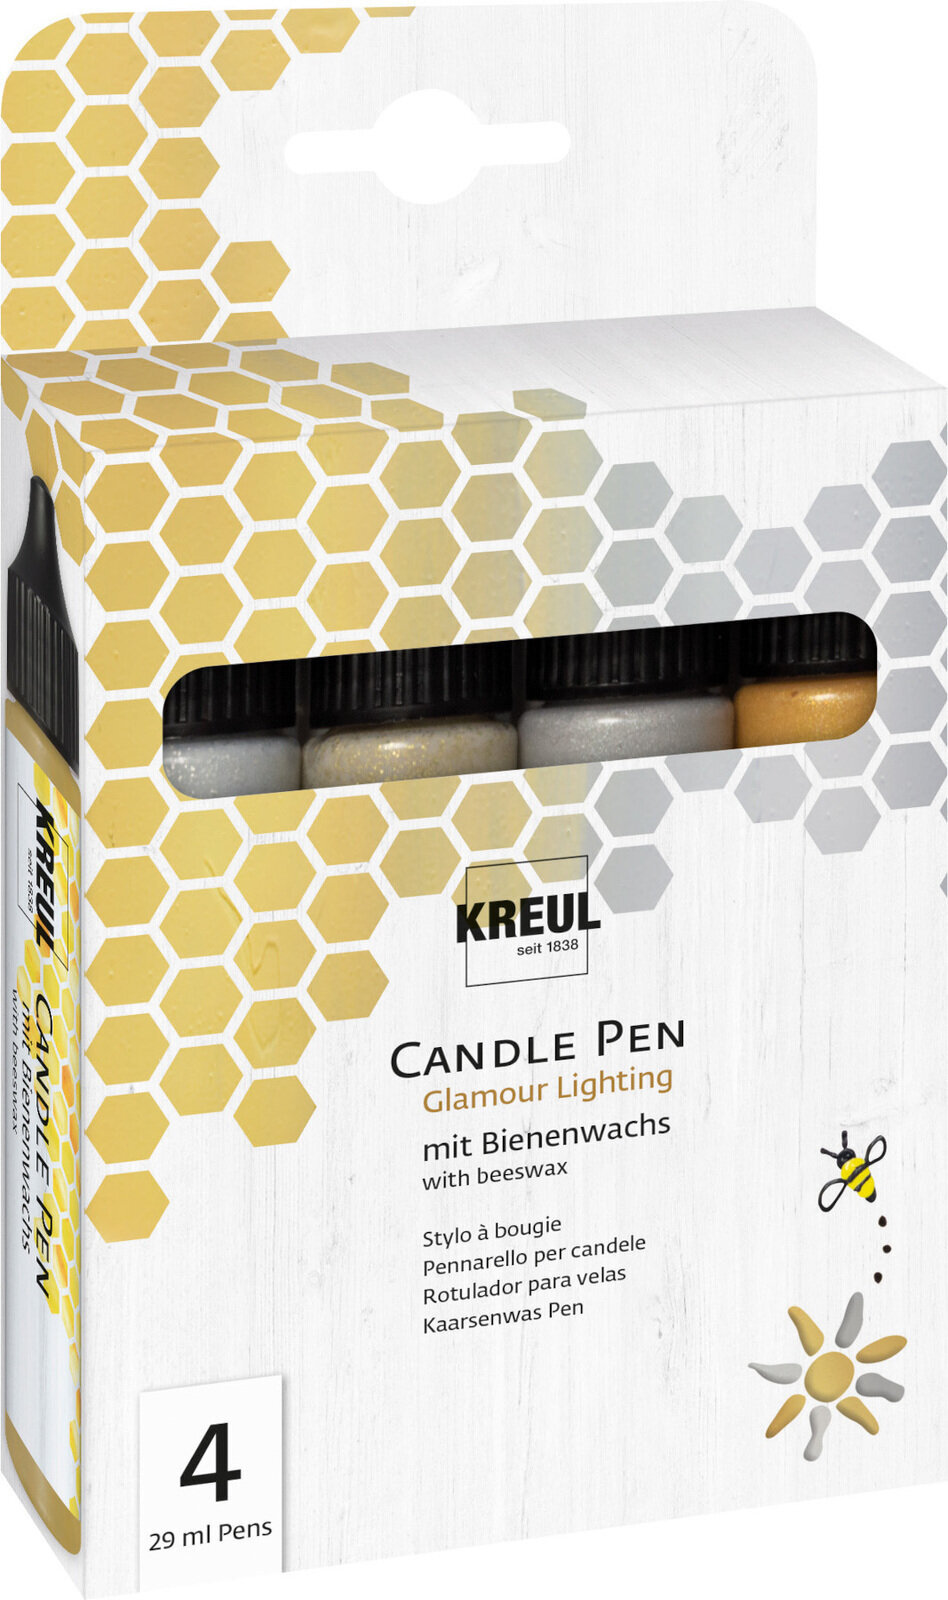 Filzstift Kreul Candle Pen Glamour Lighting